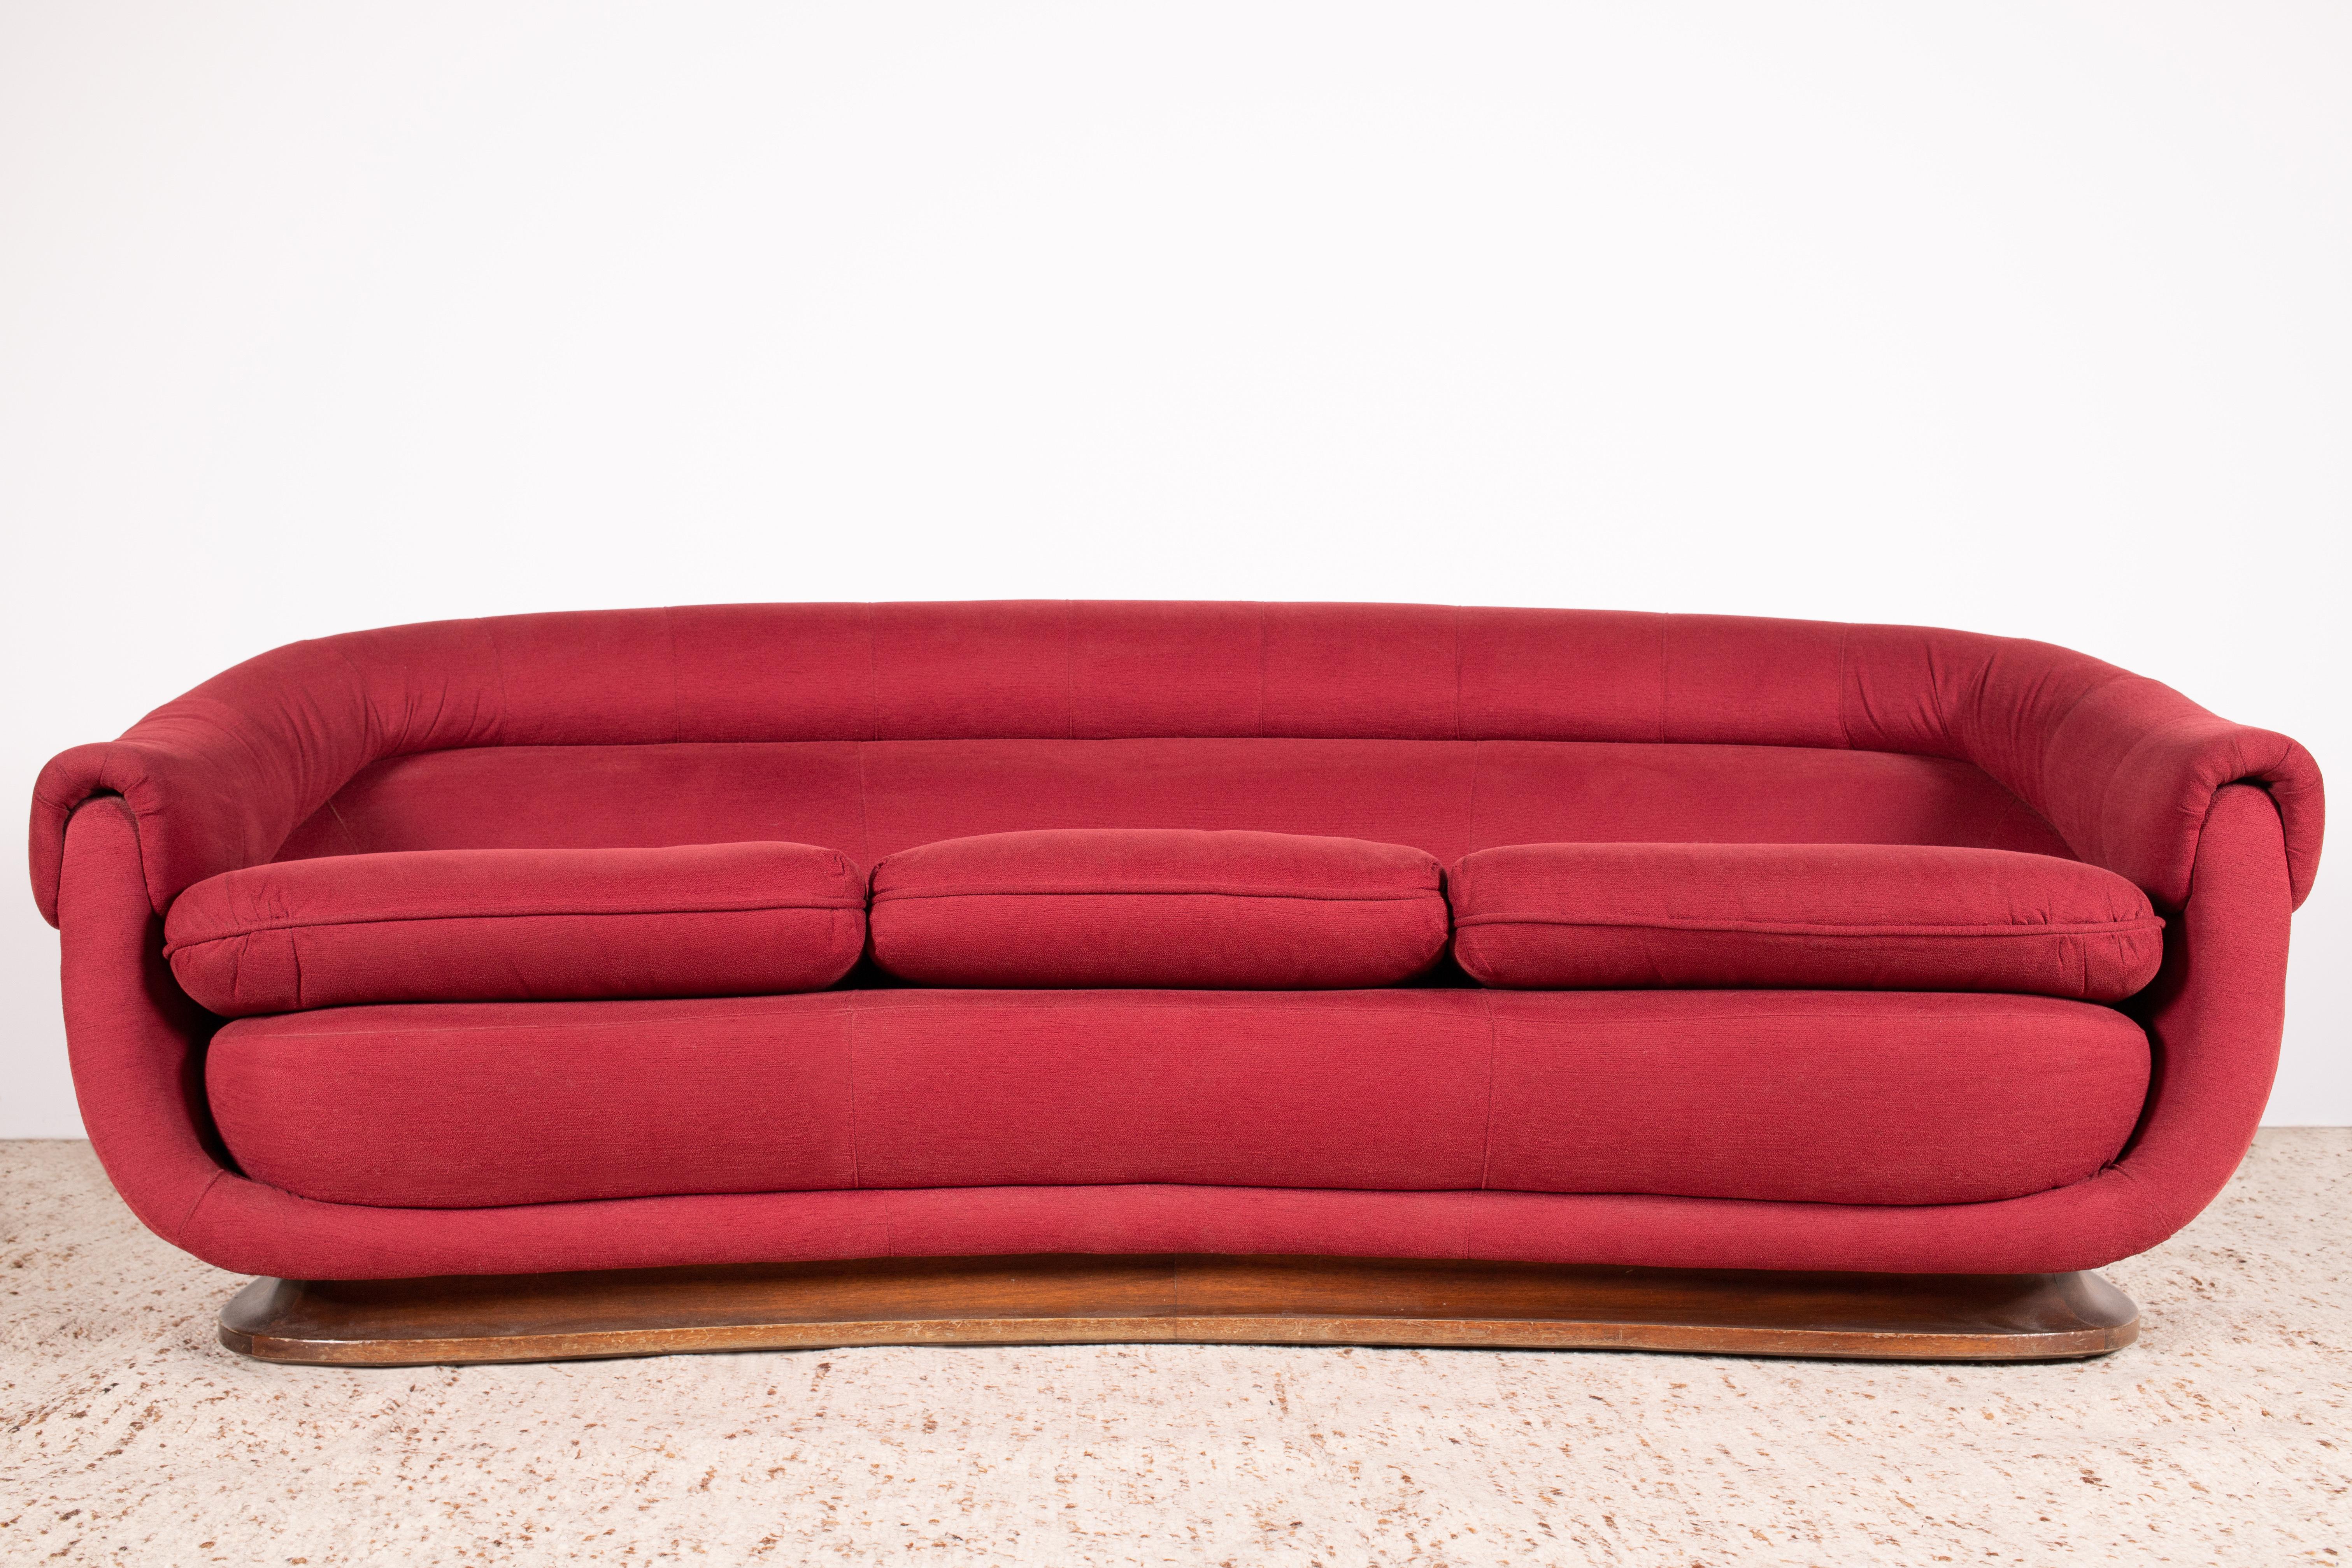 1950s - 1960s Mid-Century Organic Modern Italian curved / crescent 3-seat sofa with dark wood (probably walnut) base and red woven upholstery.

Des lignes élégamment sculptées émanent du motif central en forme de courbe. Un cadre rembourré arrondi,